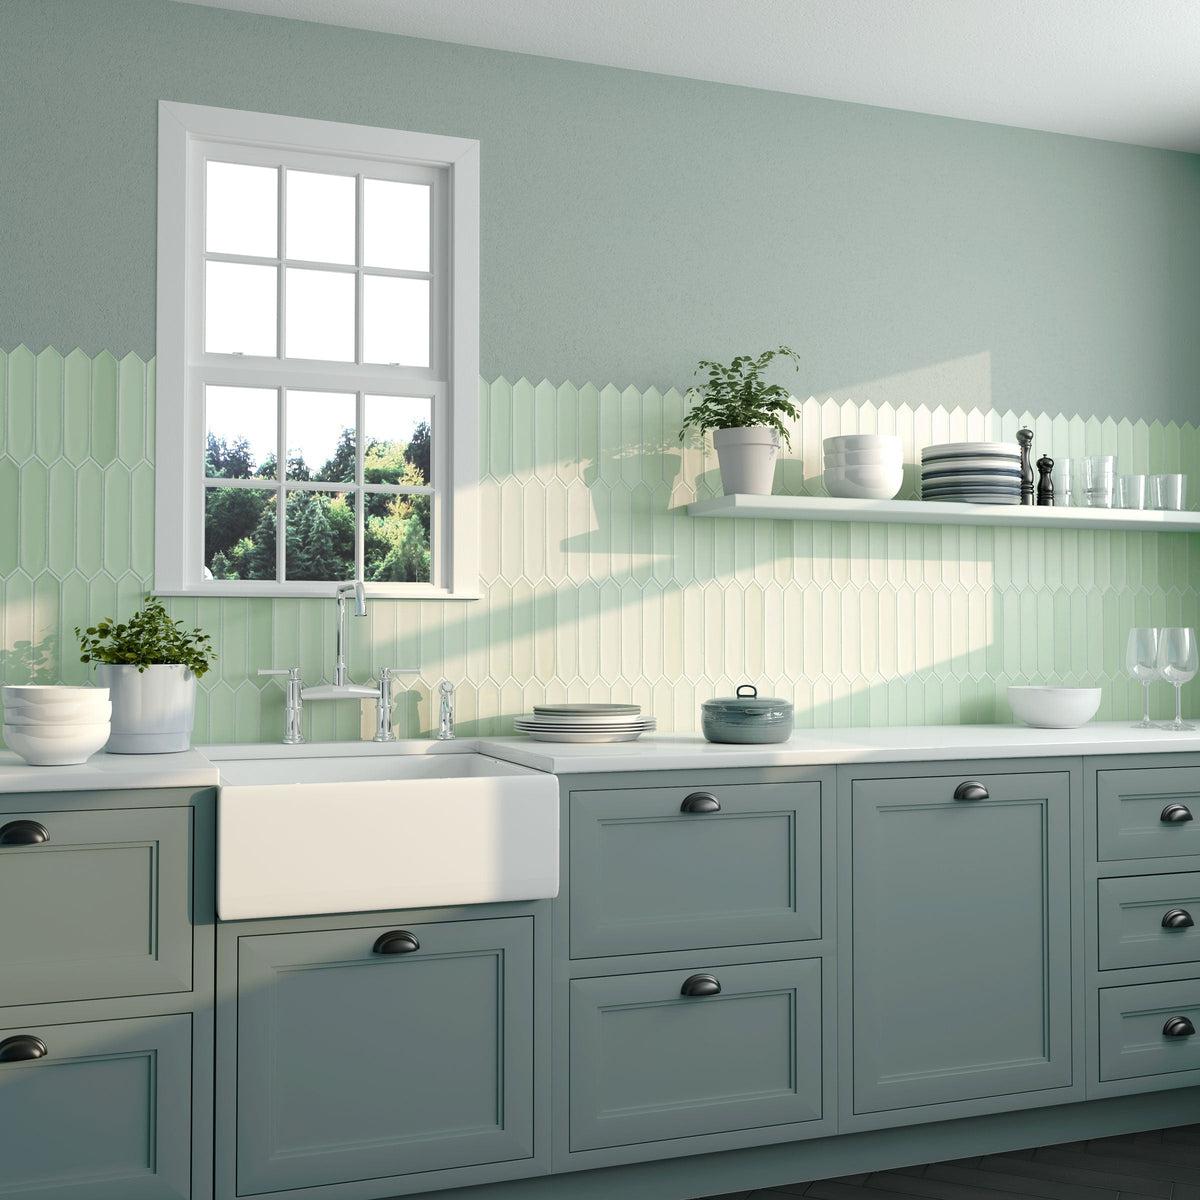 Mint green ceramic picket tile kitchen backsplash